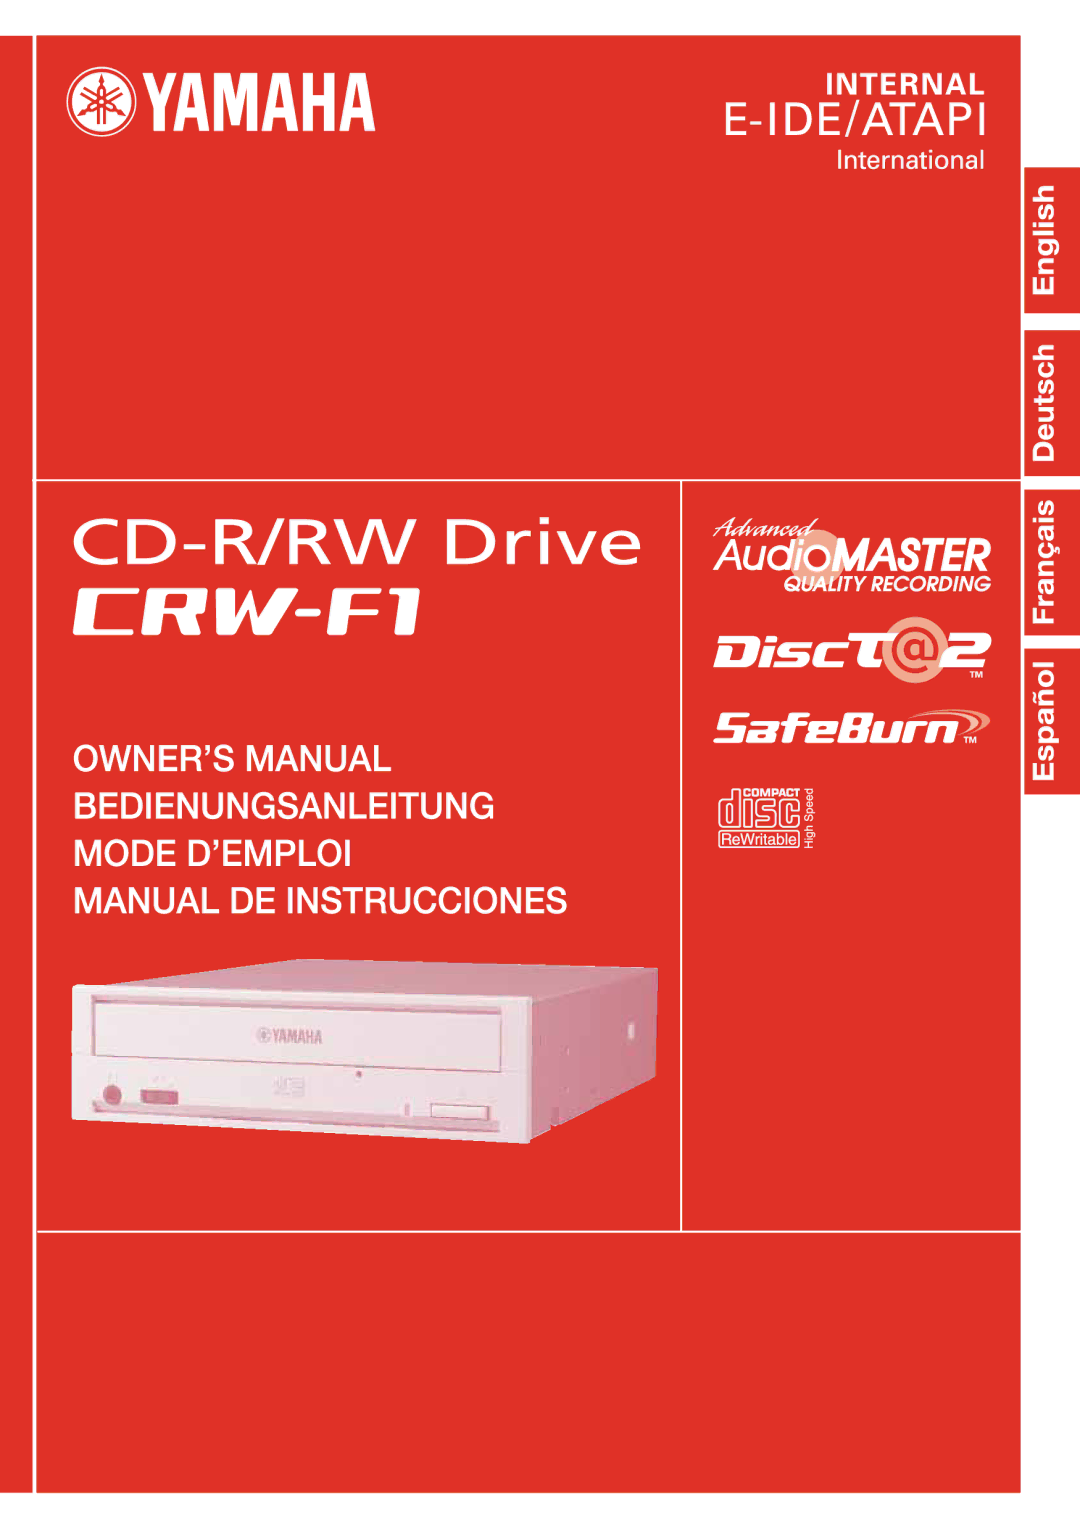 Yamaha CRW-F1-NB manual 